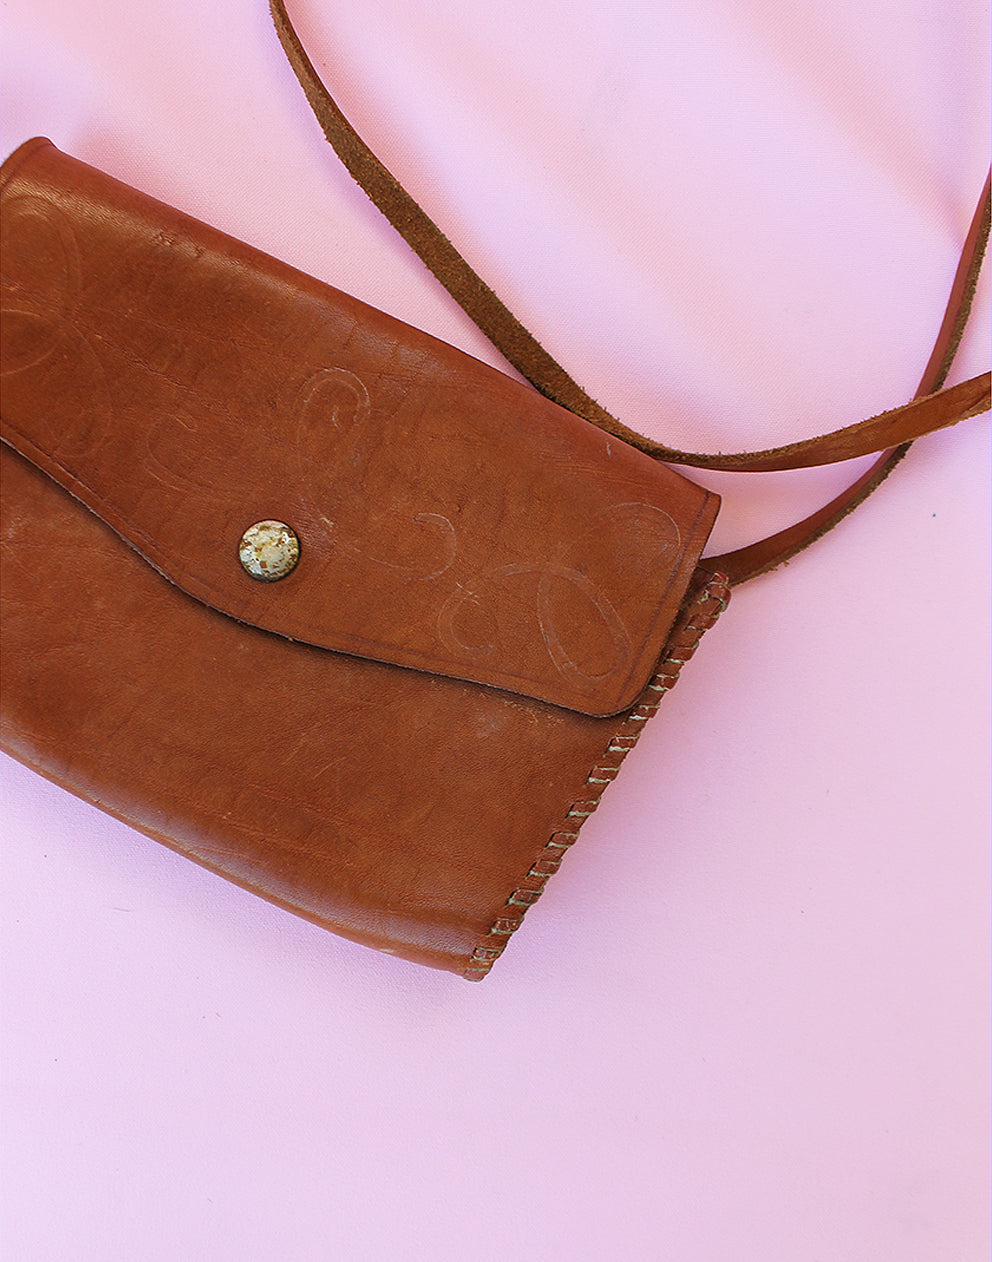 Tan Brown Real Leather Small Cross Body Handbag